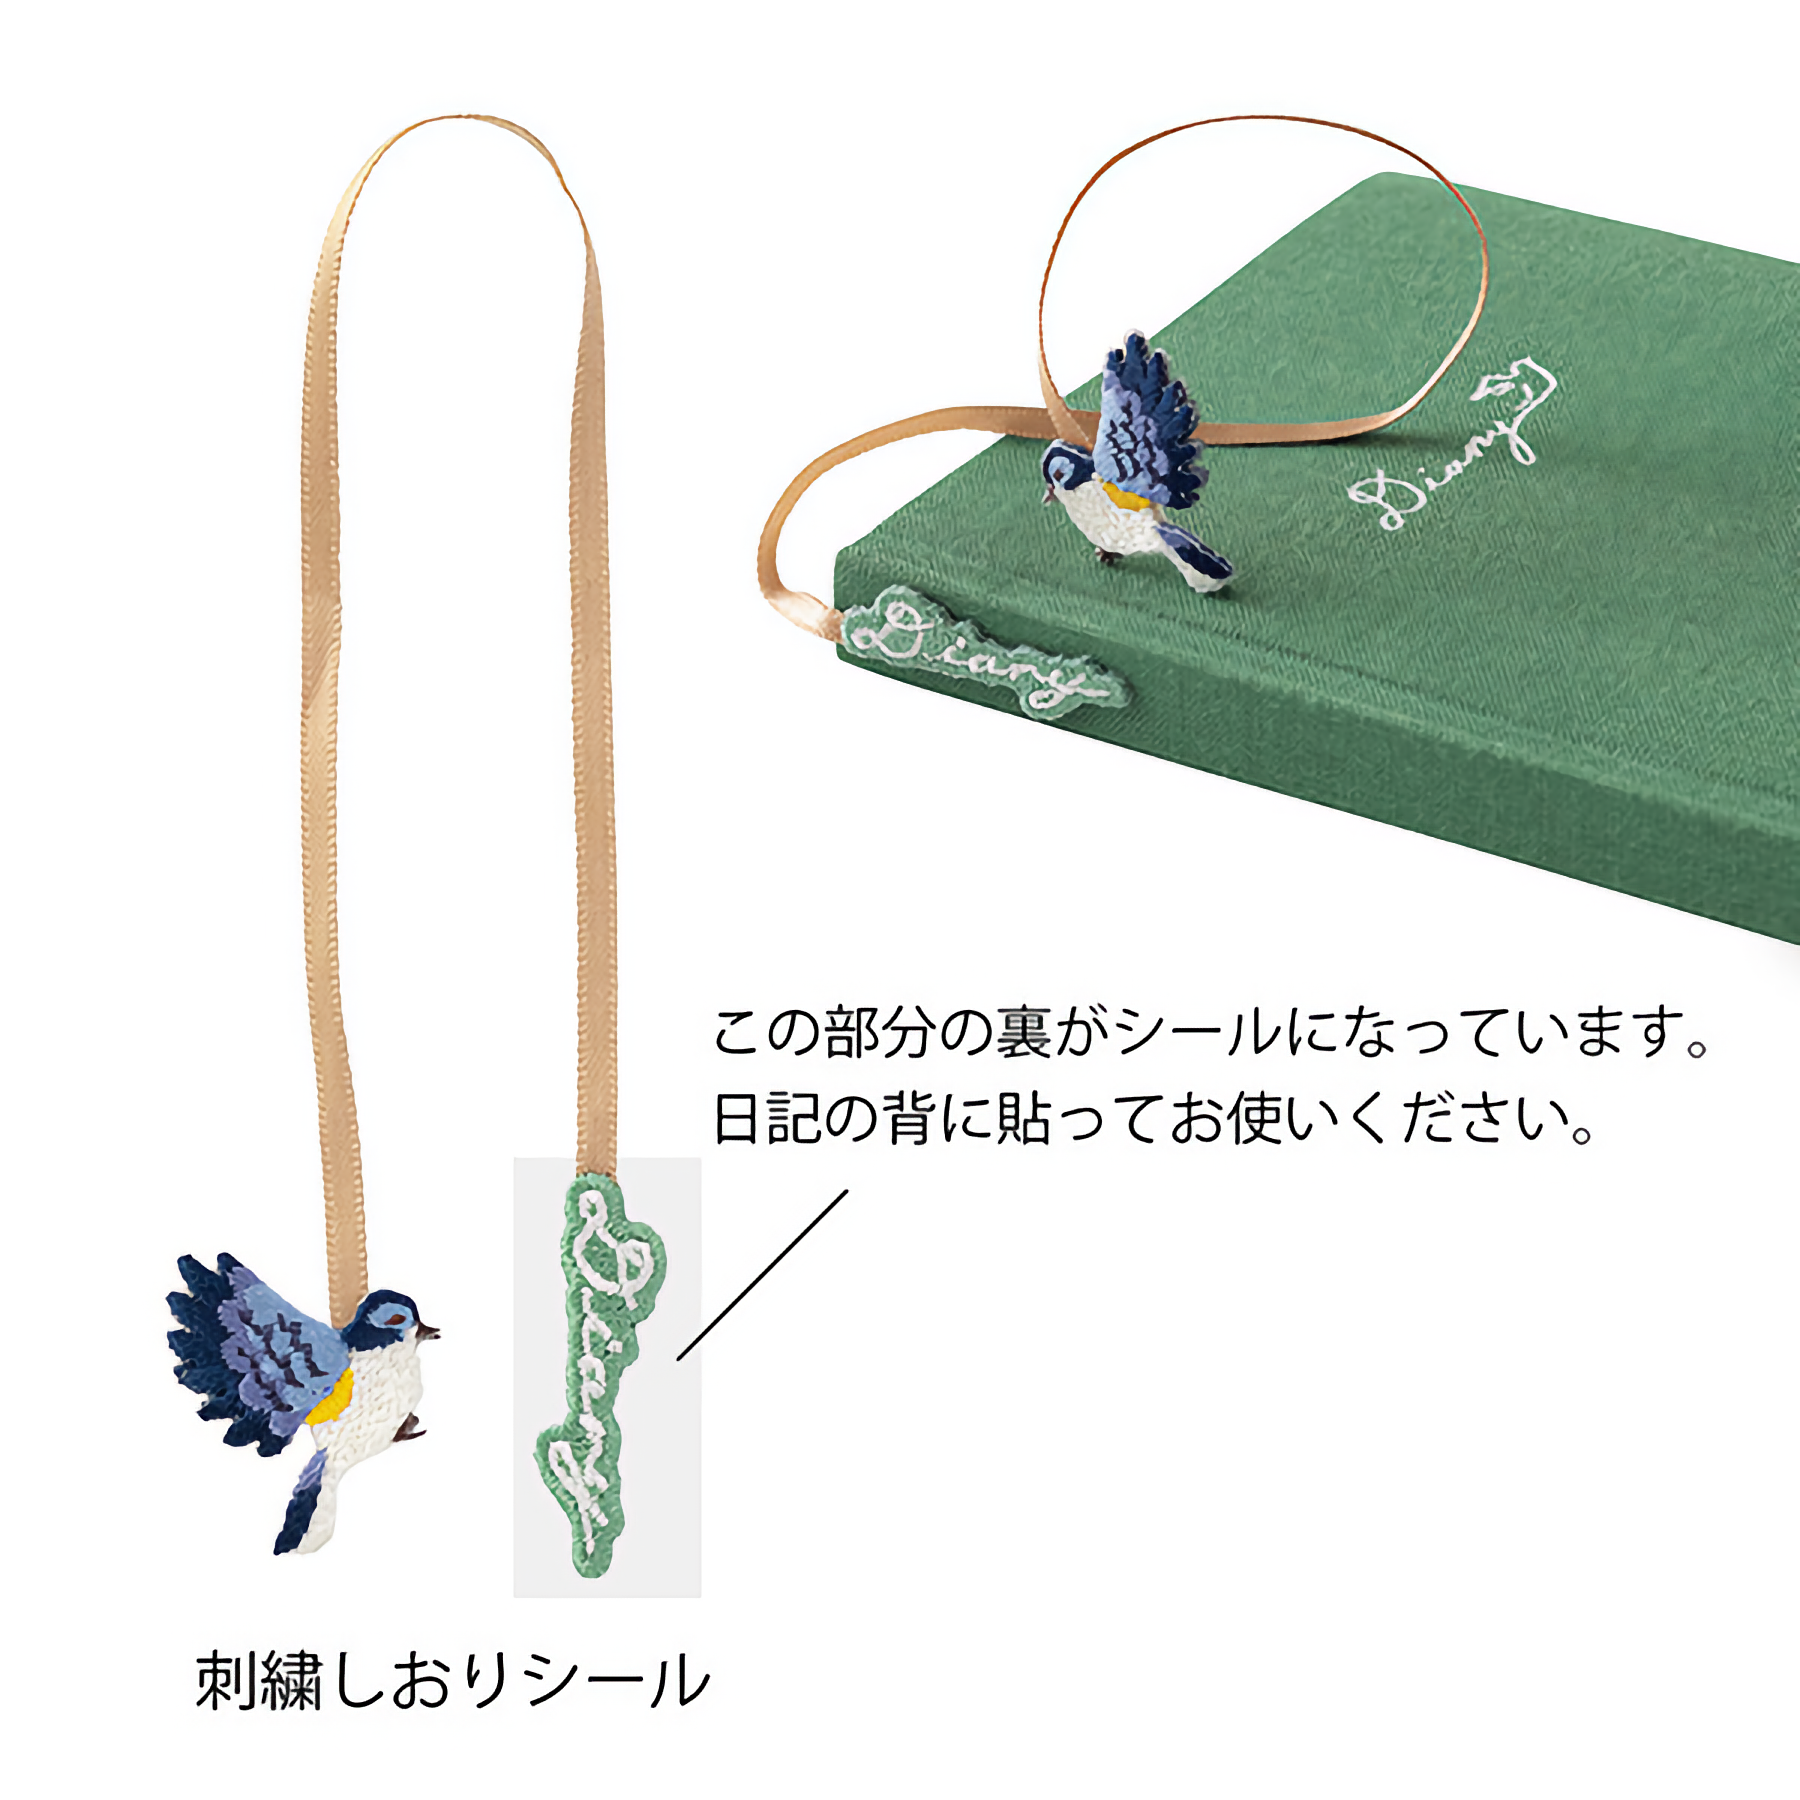 Midori Diary with Embroidery Bookmark Bird